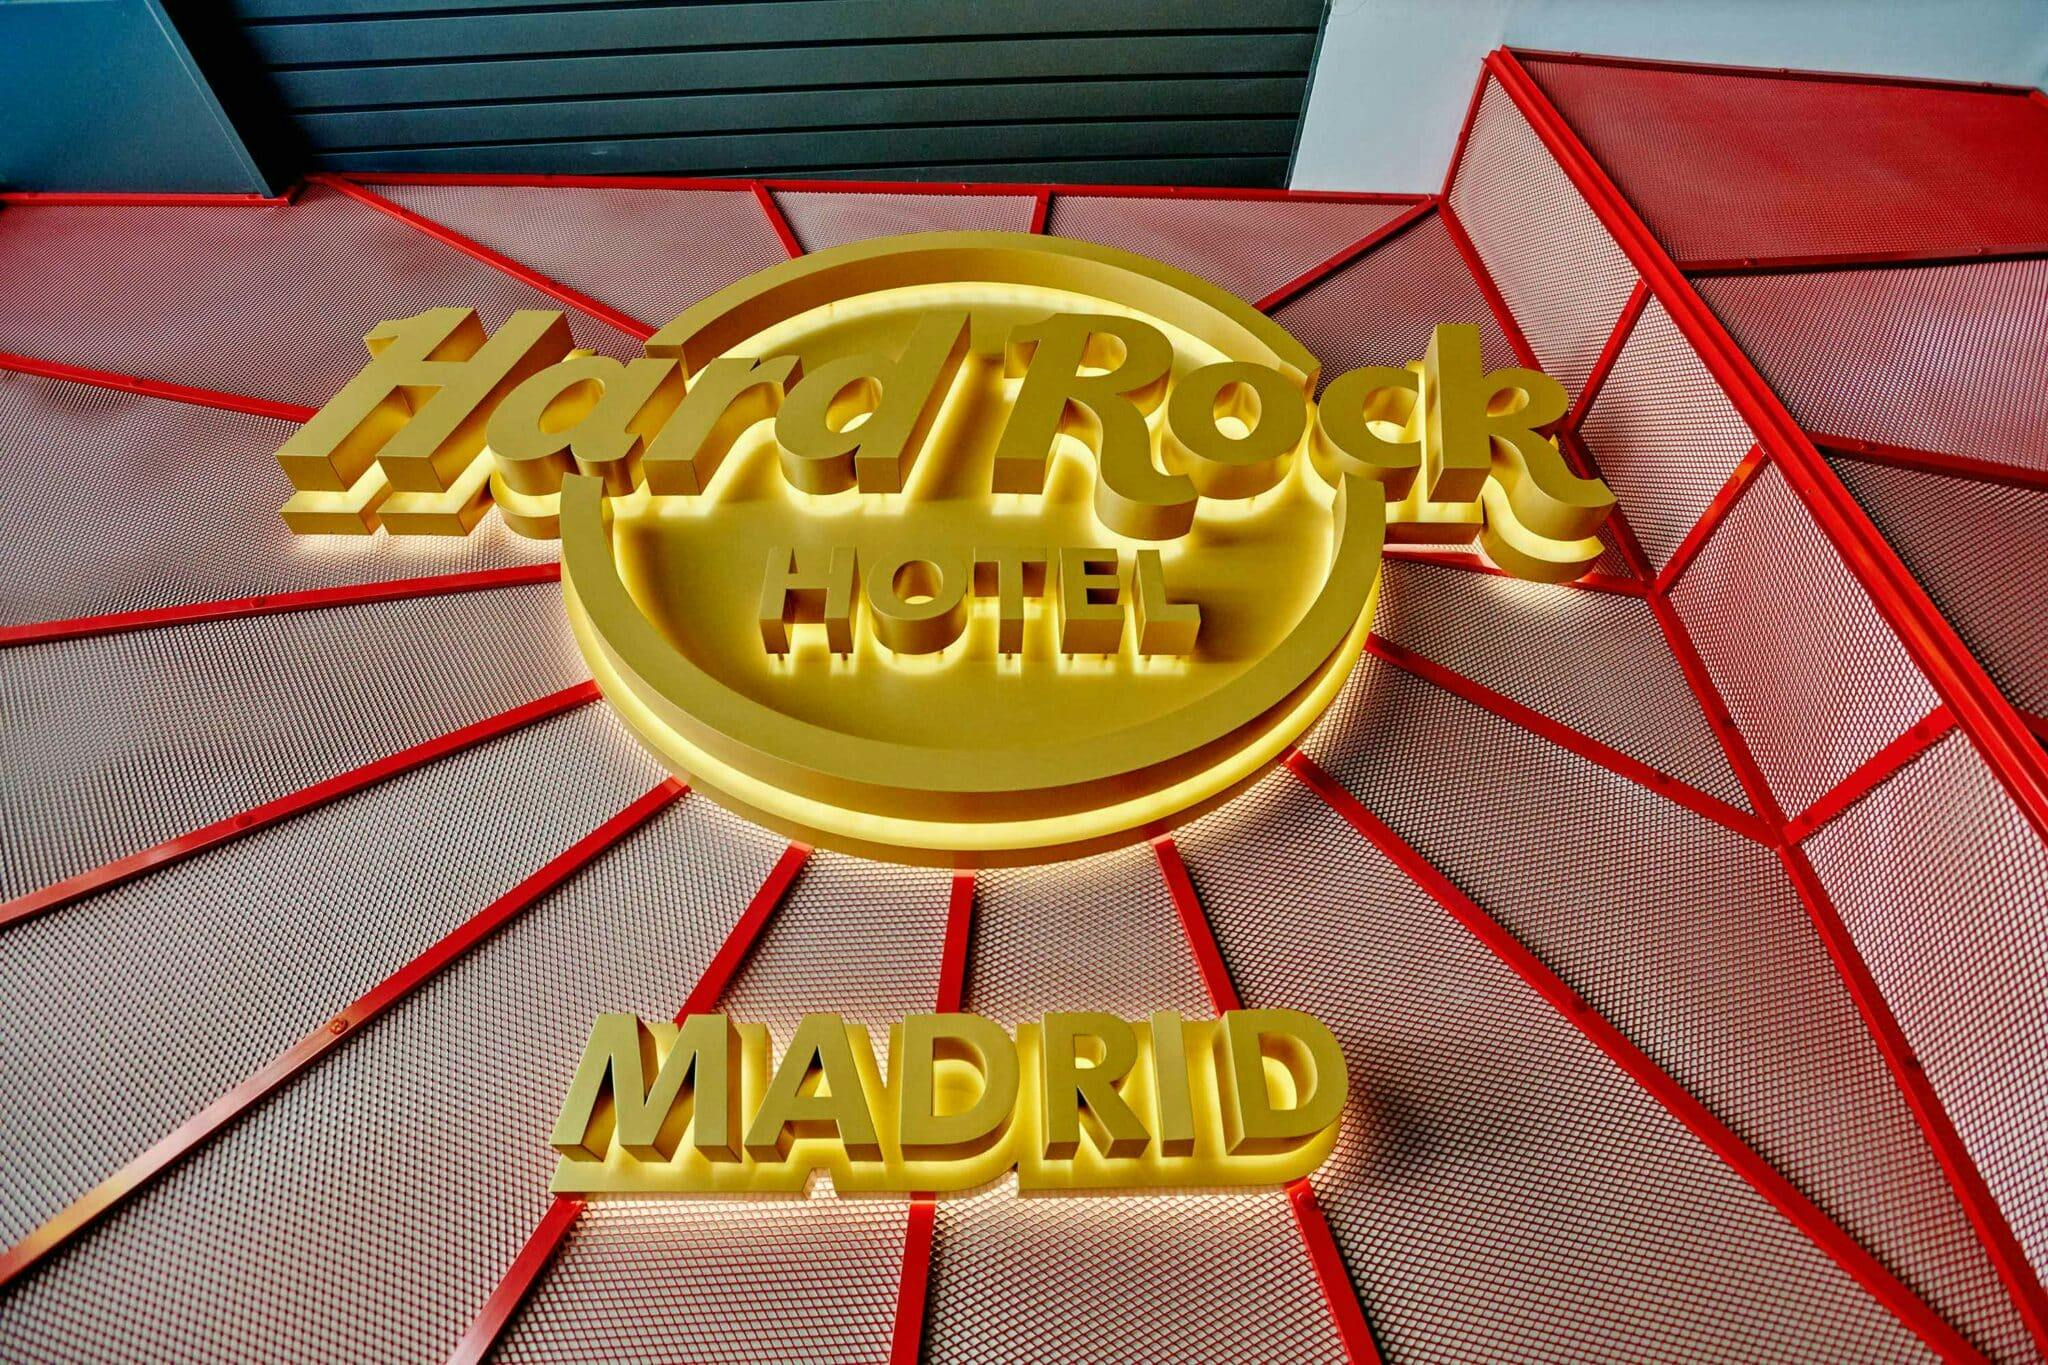 Numéro d'image 168 de la section actuelle de Hard Rock Hotel Madrid de Cosentino France